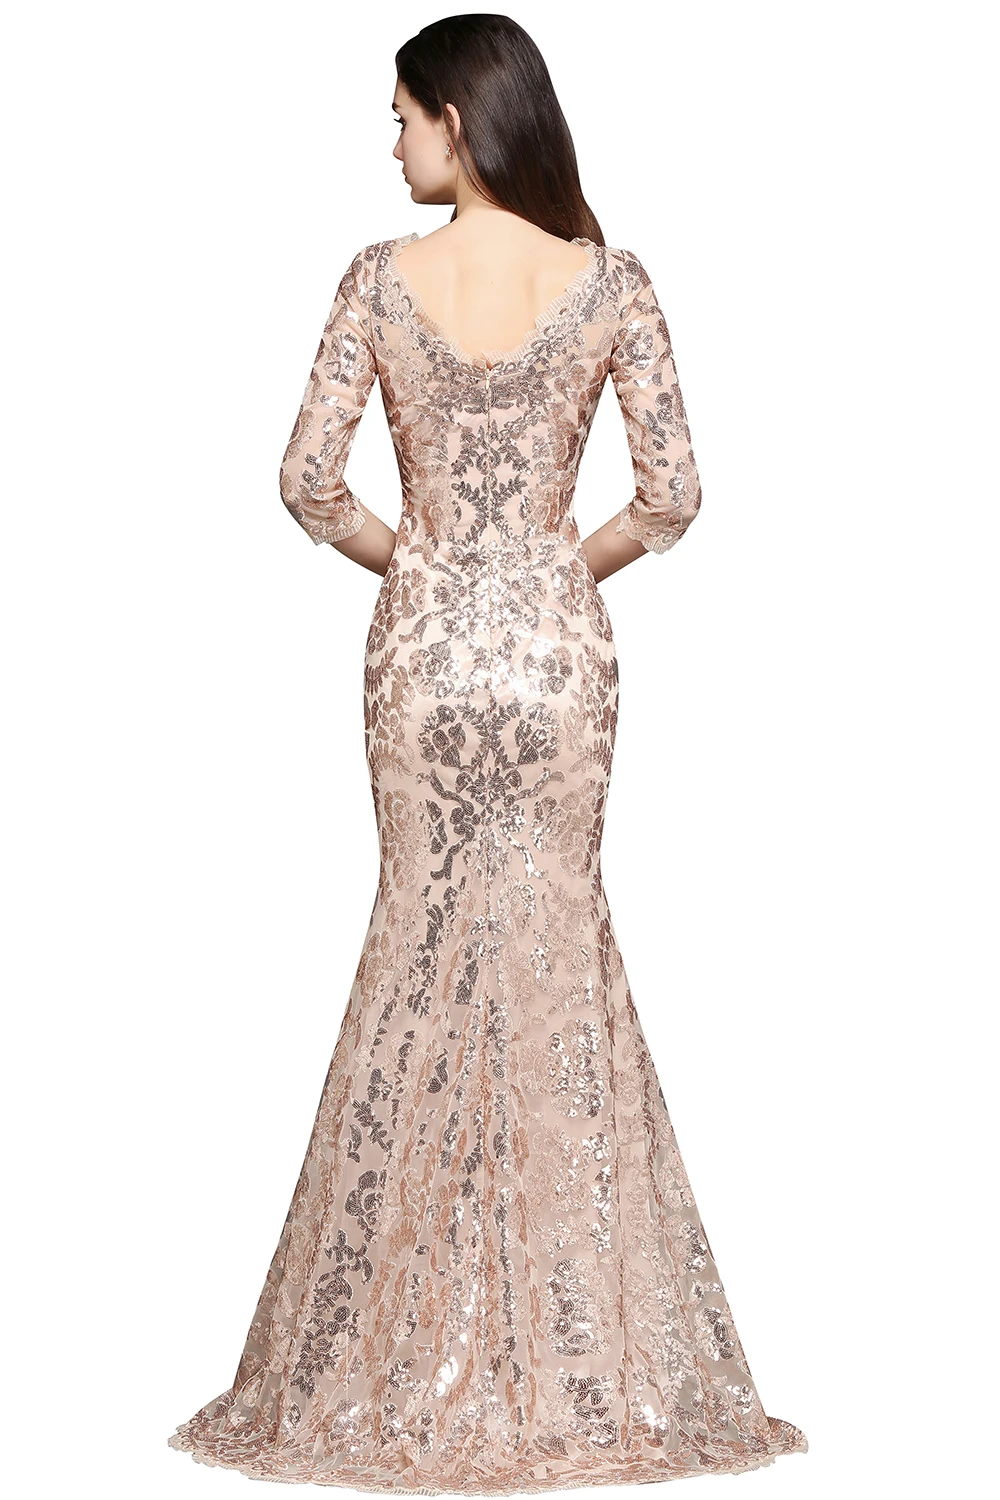 Robe de Soiree сексуальное женское элегантное Золотое платье для выпускного вечера с блестками полурукав вечернее платье розовые вечерние длинные с глубоким вырезом на спине, для выпускного вечера